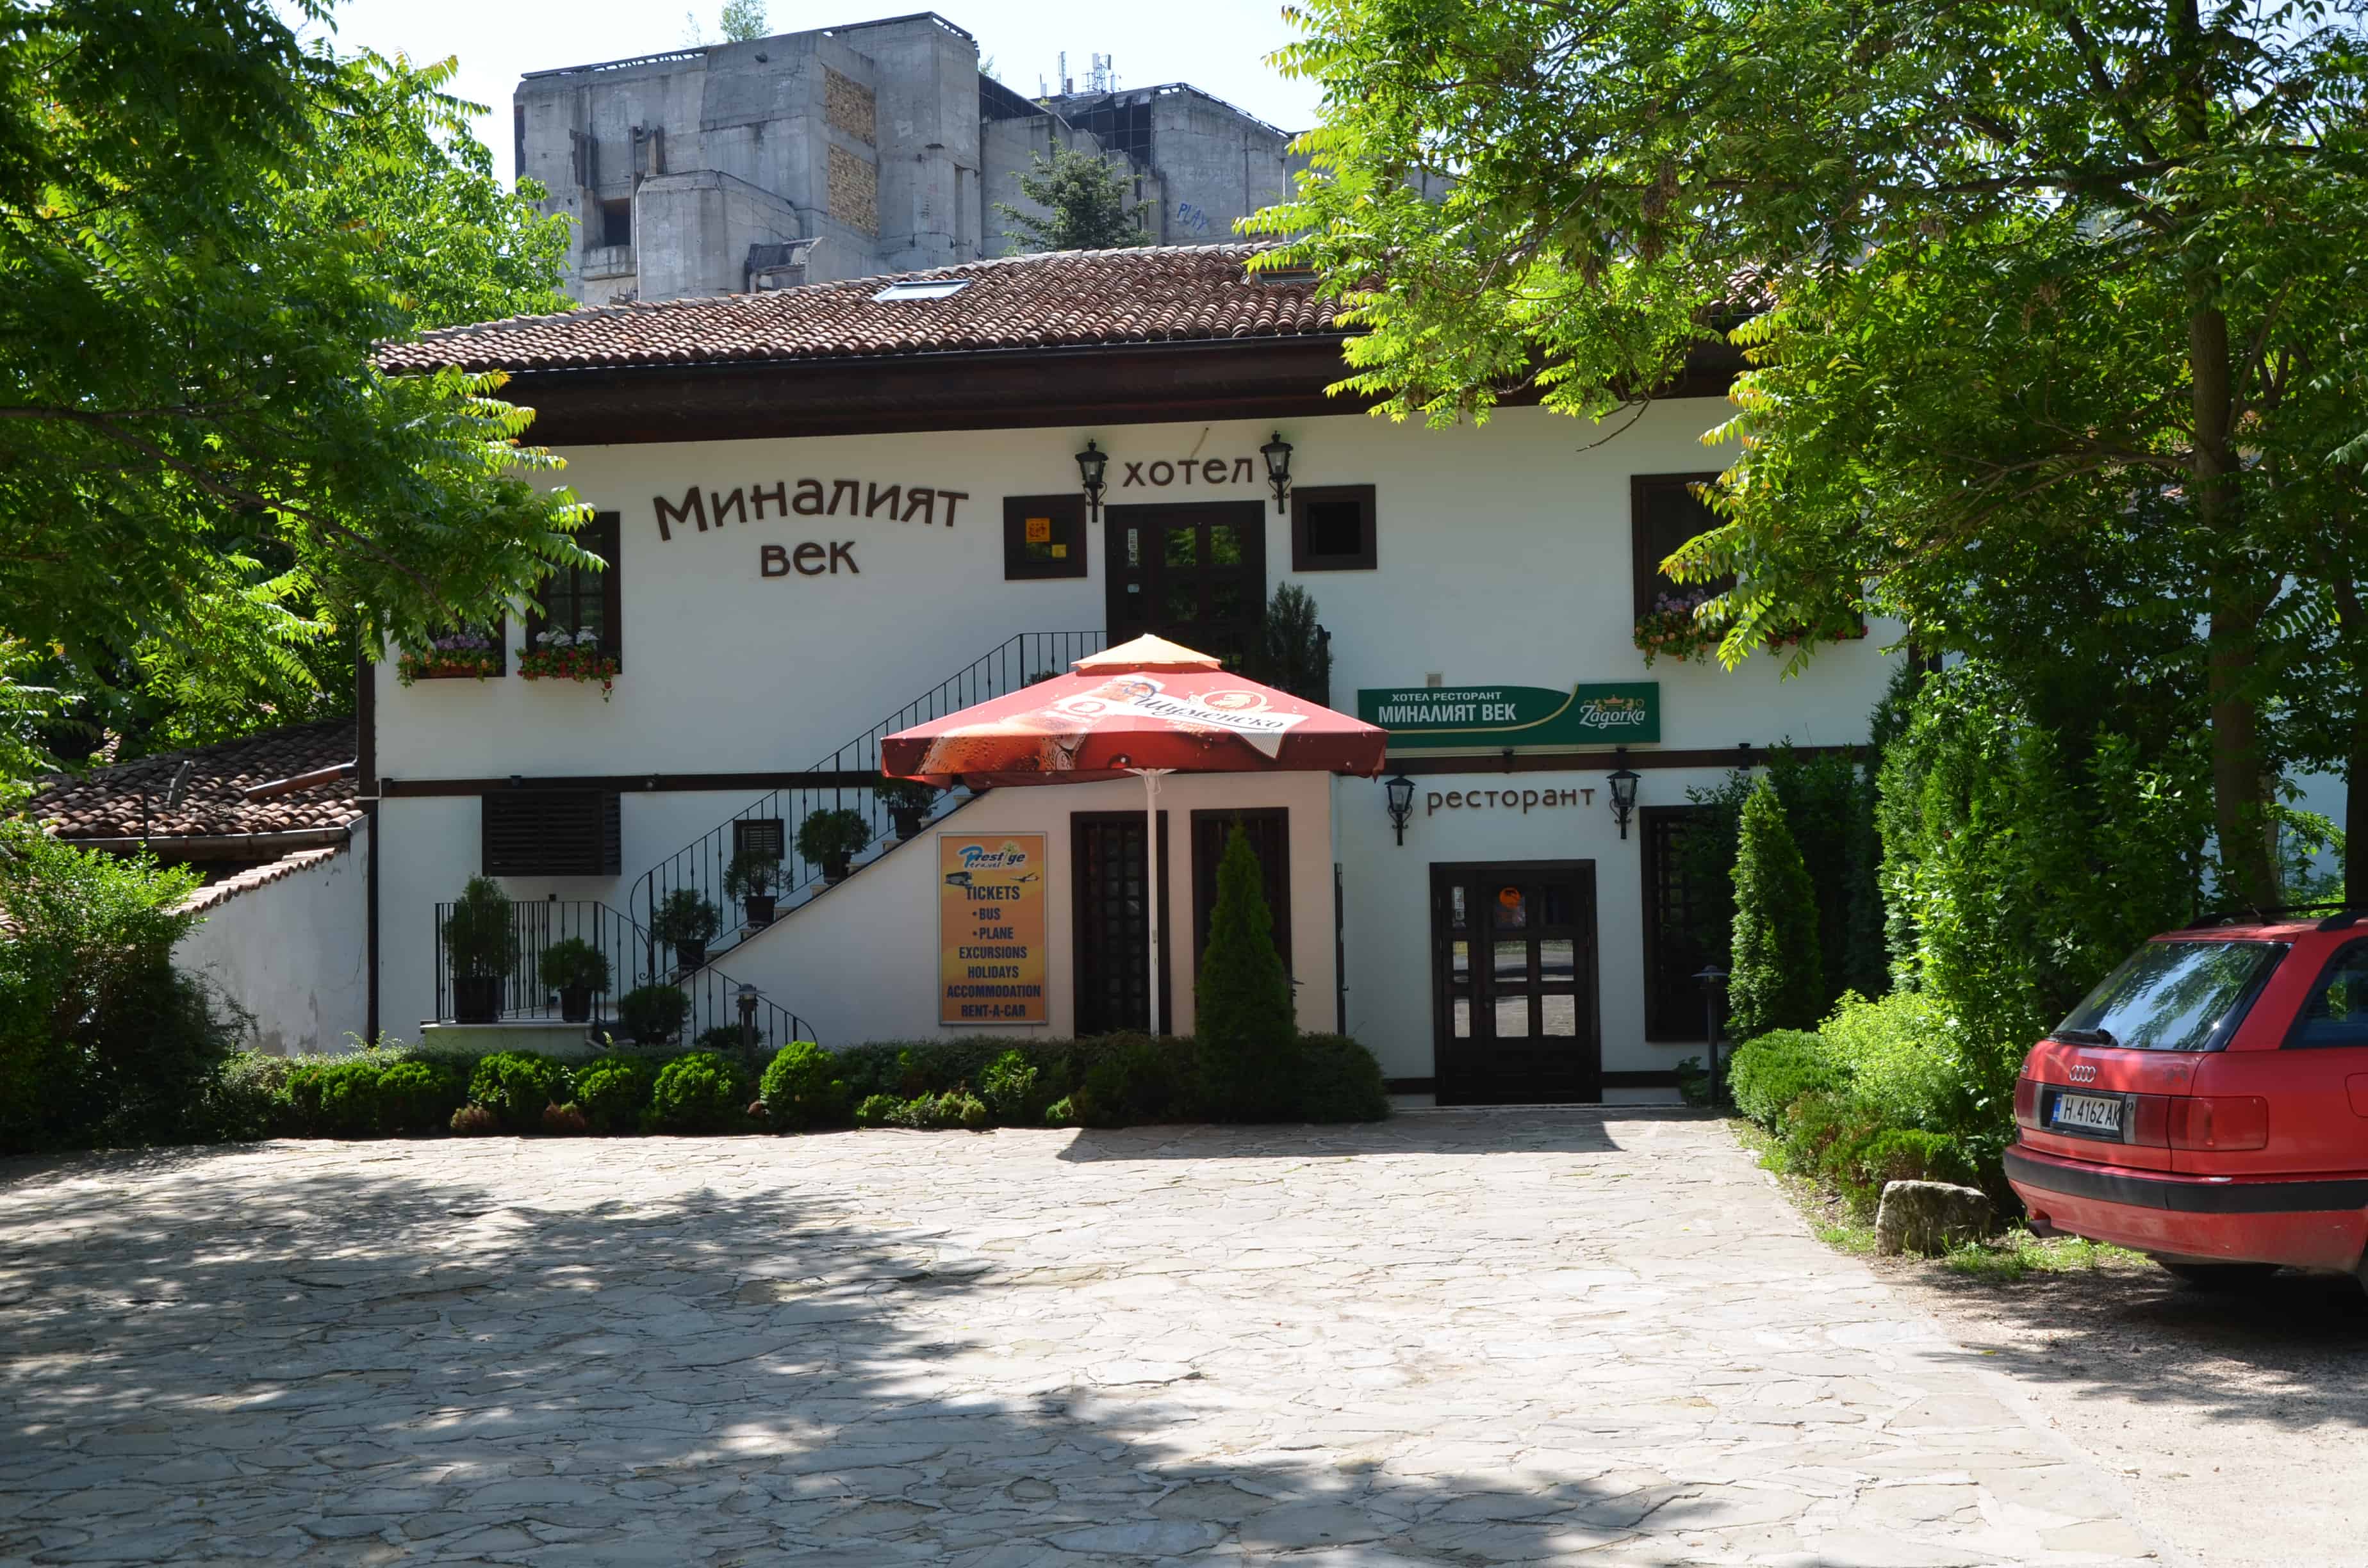 Hotel Minaliat Vek in Shumen, Bulgaria